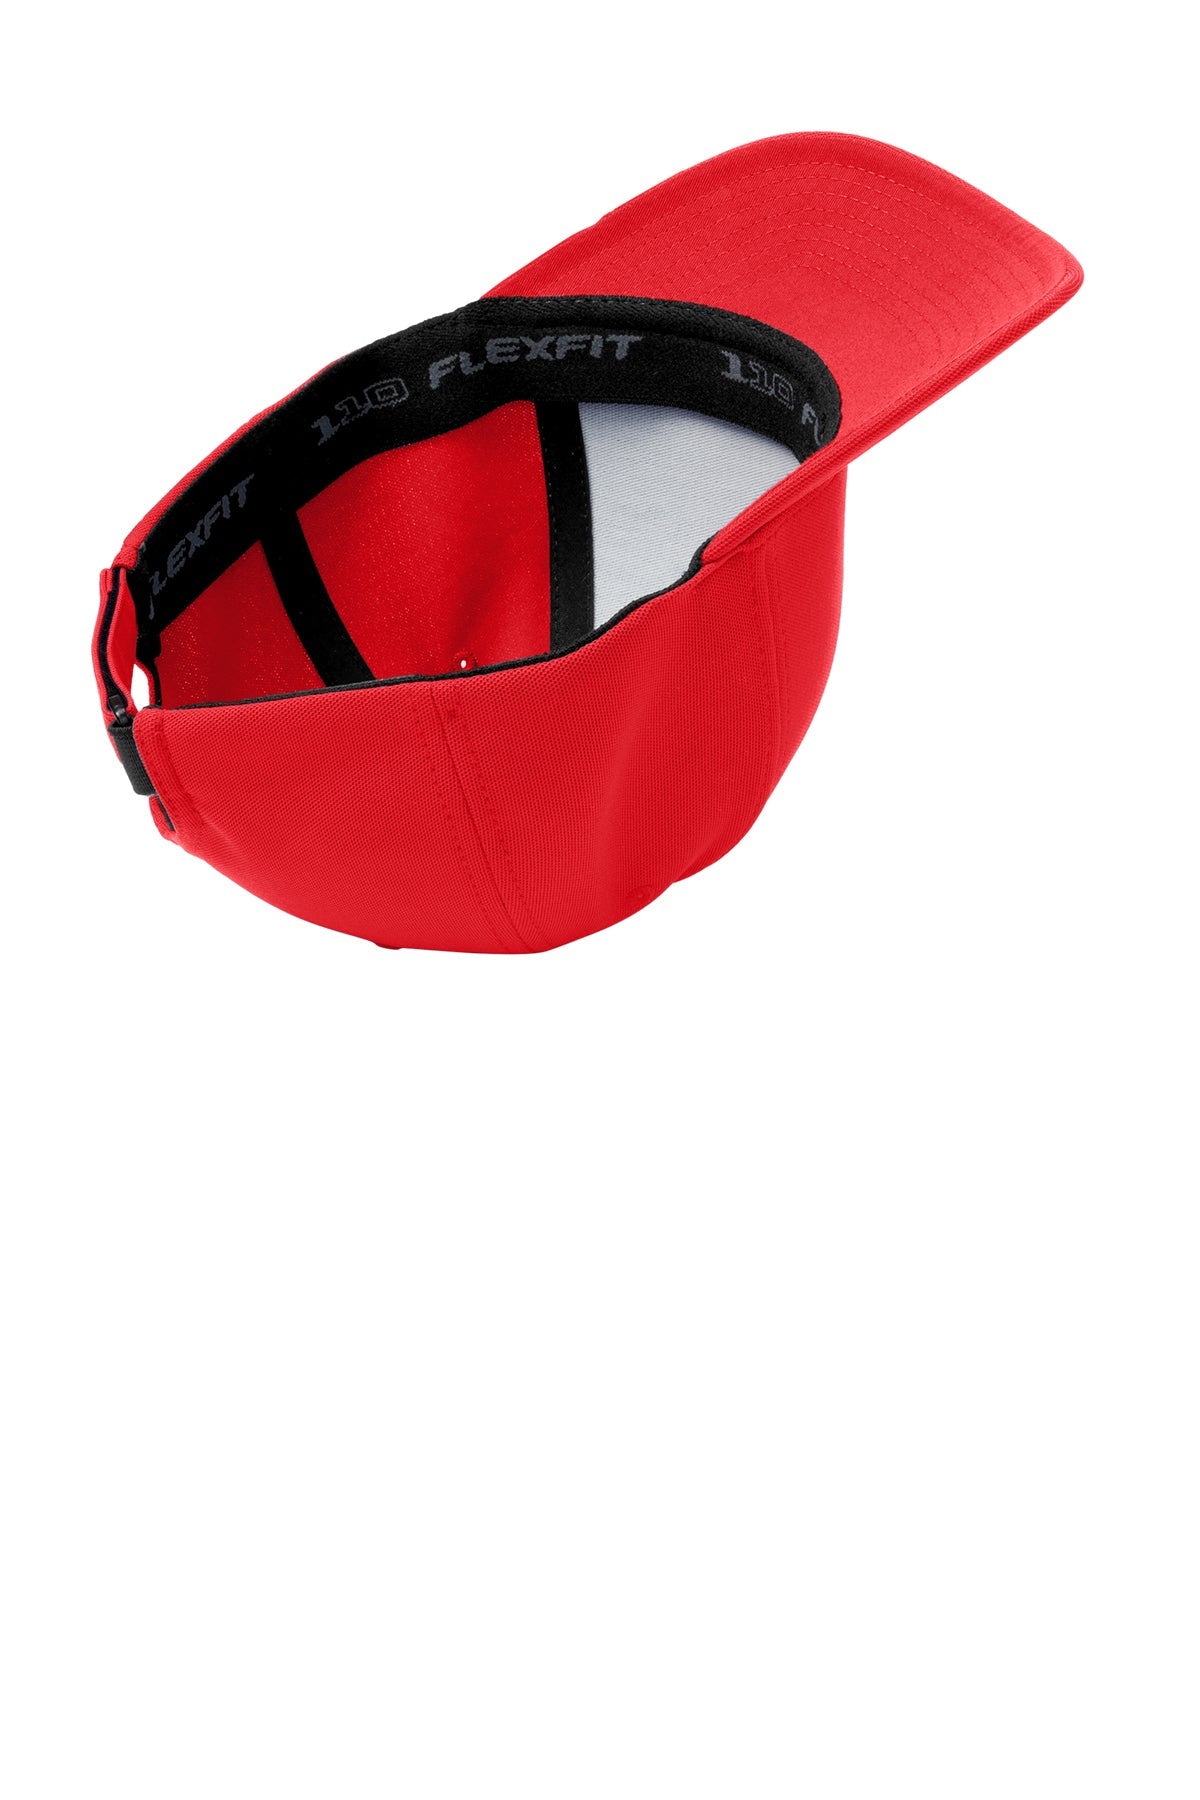 Port Authority Flexfit Custom One Ten Cool & Dry Mini Pique Caps, Red